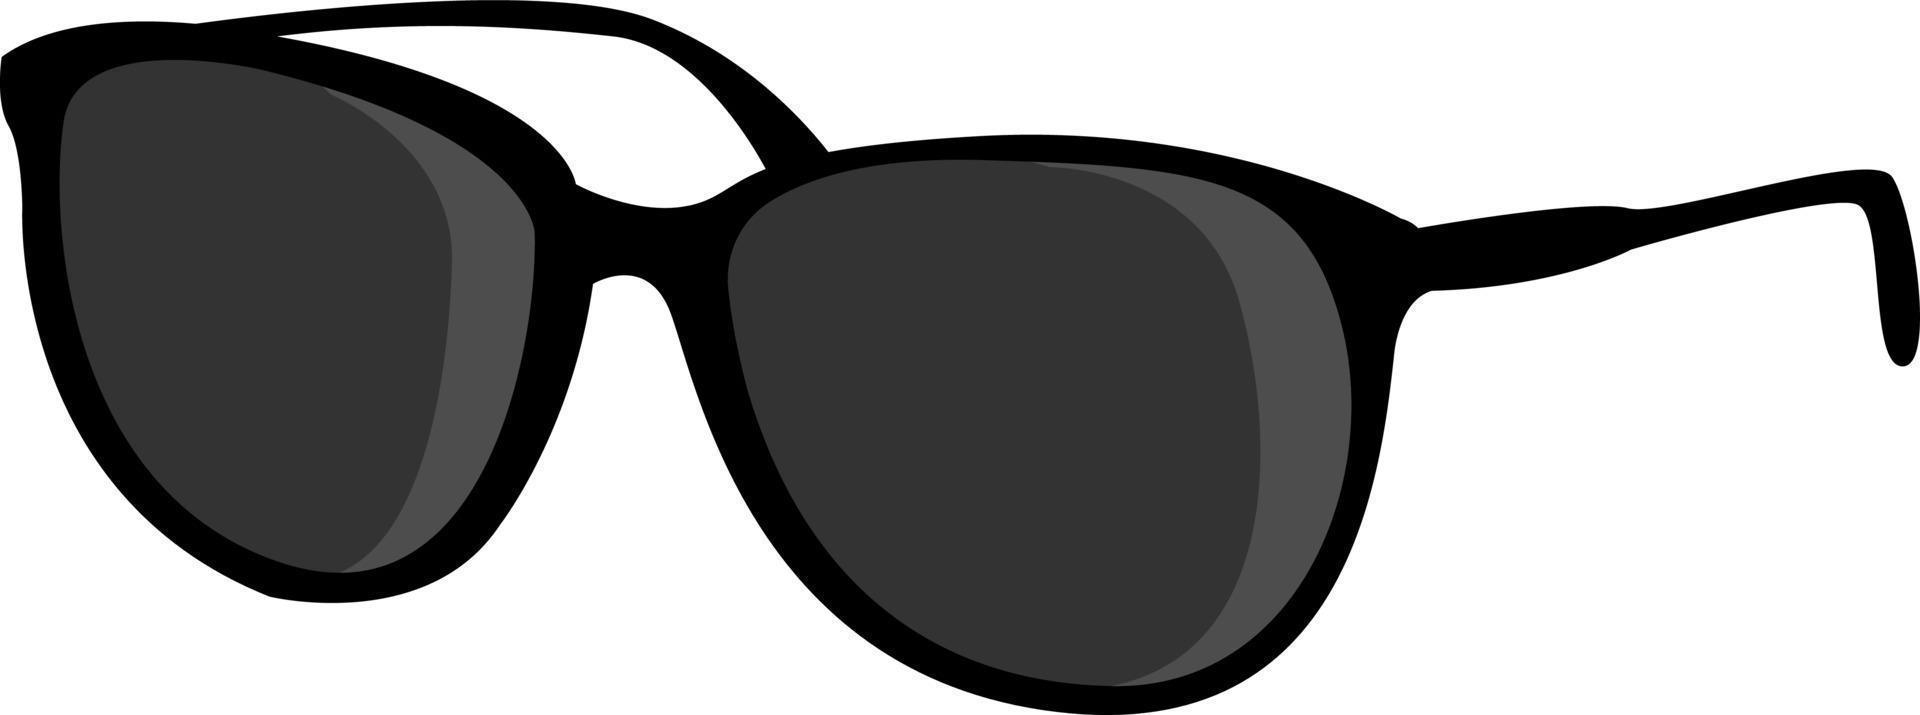 Black glasses, illustration, vector on white background.